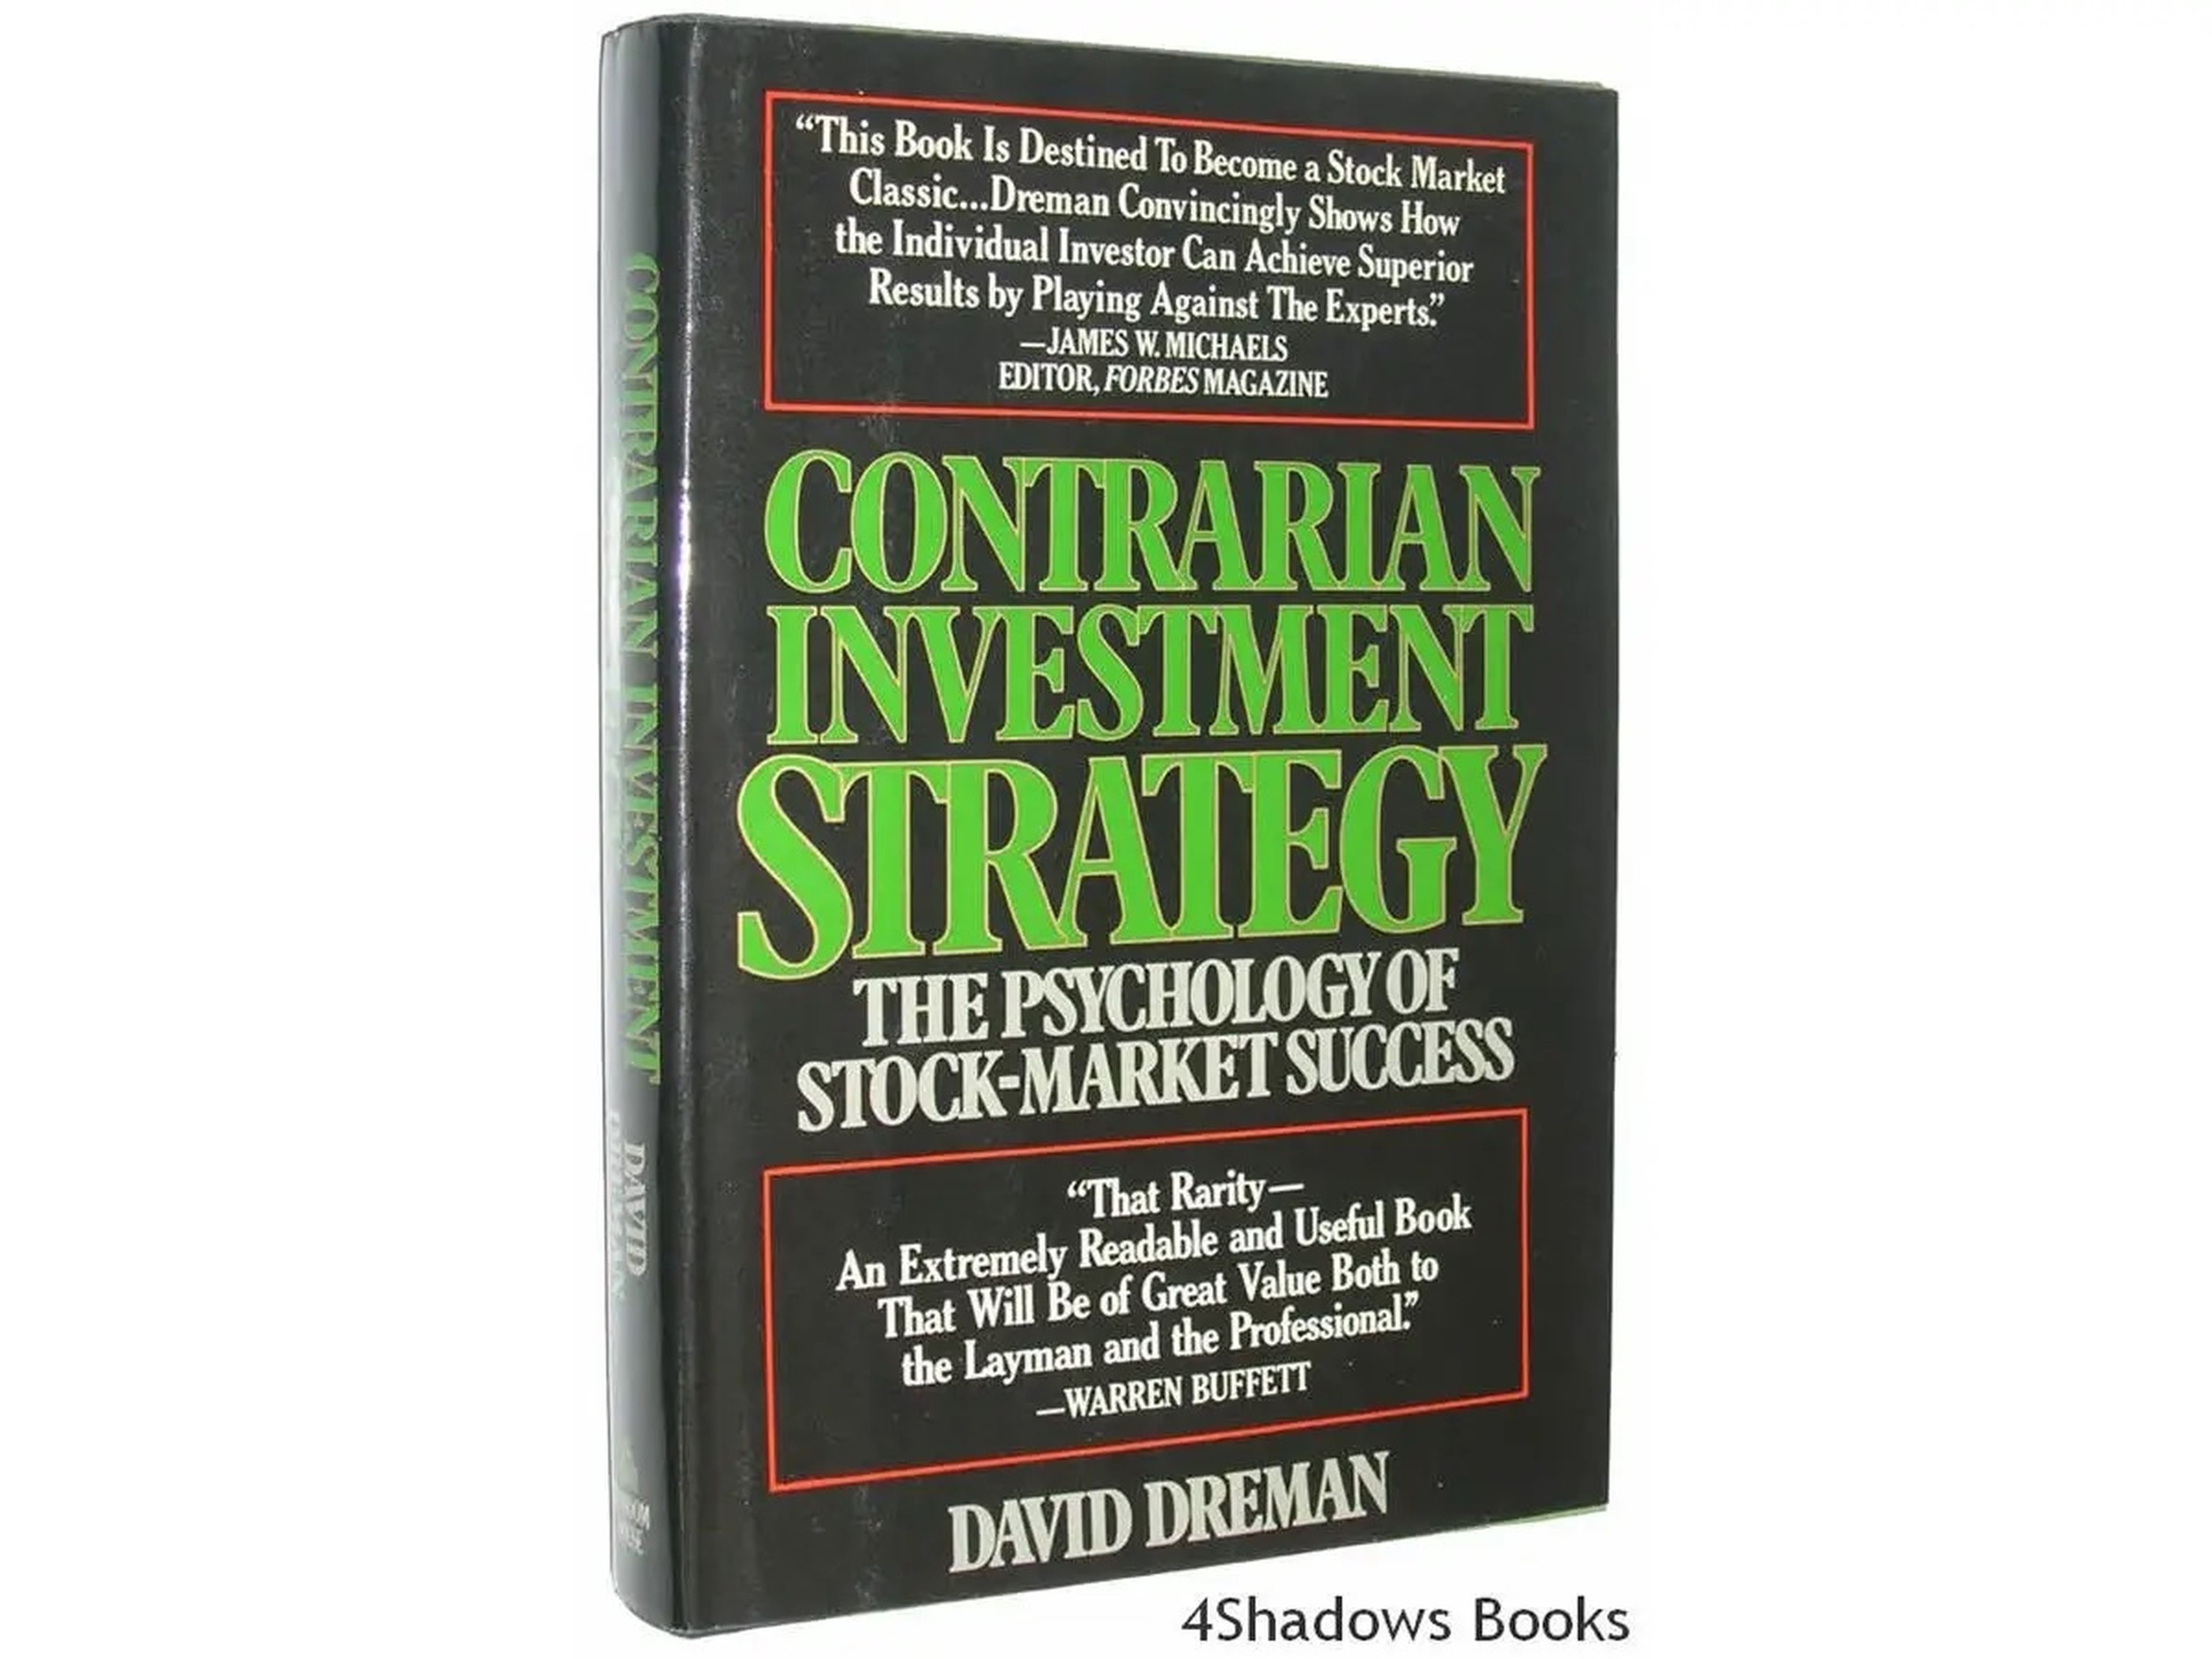 'Estrategia de inversión contraria: La psicología del éxito bursátil' de David Dreman.